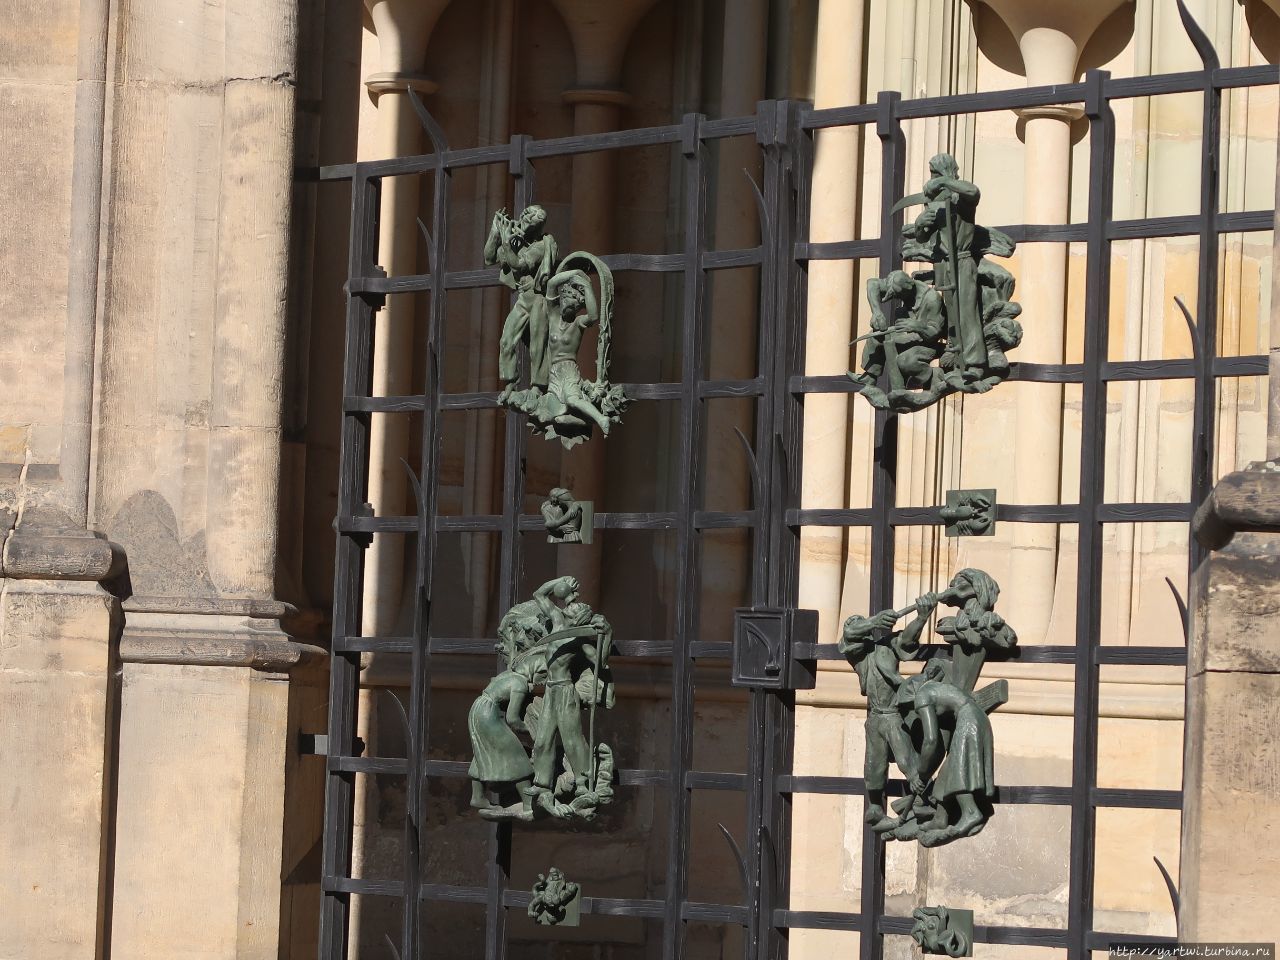 Отдельного внимания заслуживает декоративная ограда в виде решётки перед Золотыми воротами. На ней можно увидеть 12 скульптурных композиций, которые изображают бытовые занятия для каждого знака зодиака. Это очень интересный момент — ведь Церковь никогда не «дружила» с астрологией. Прага, Чехия